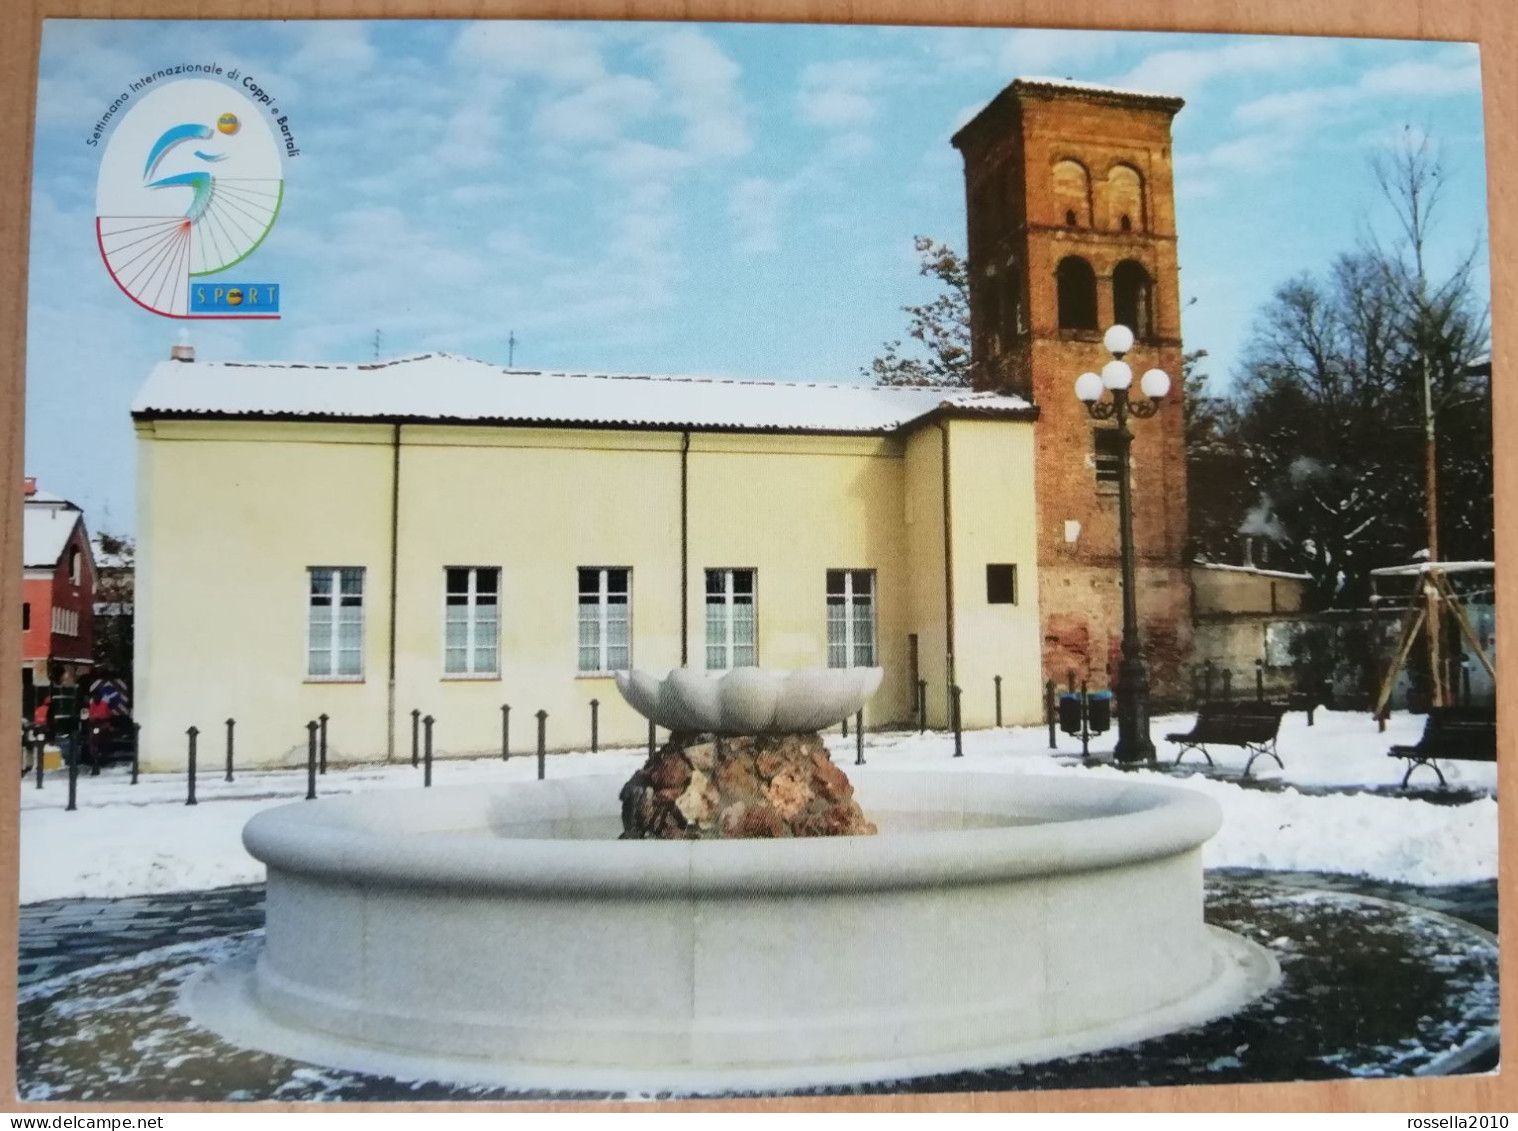 CARTOLINA CICLISMO ITALIA SASSUOLO 2003 SETTIMANA INTERNAZIONALE DI COPPI BARTALI Italy Postcard ITALIEN Ansichtskarten - Manifestations